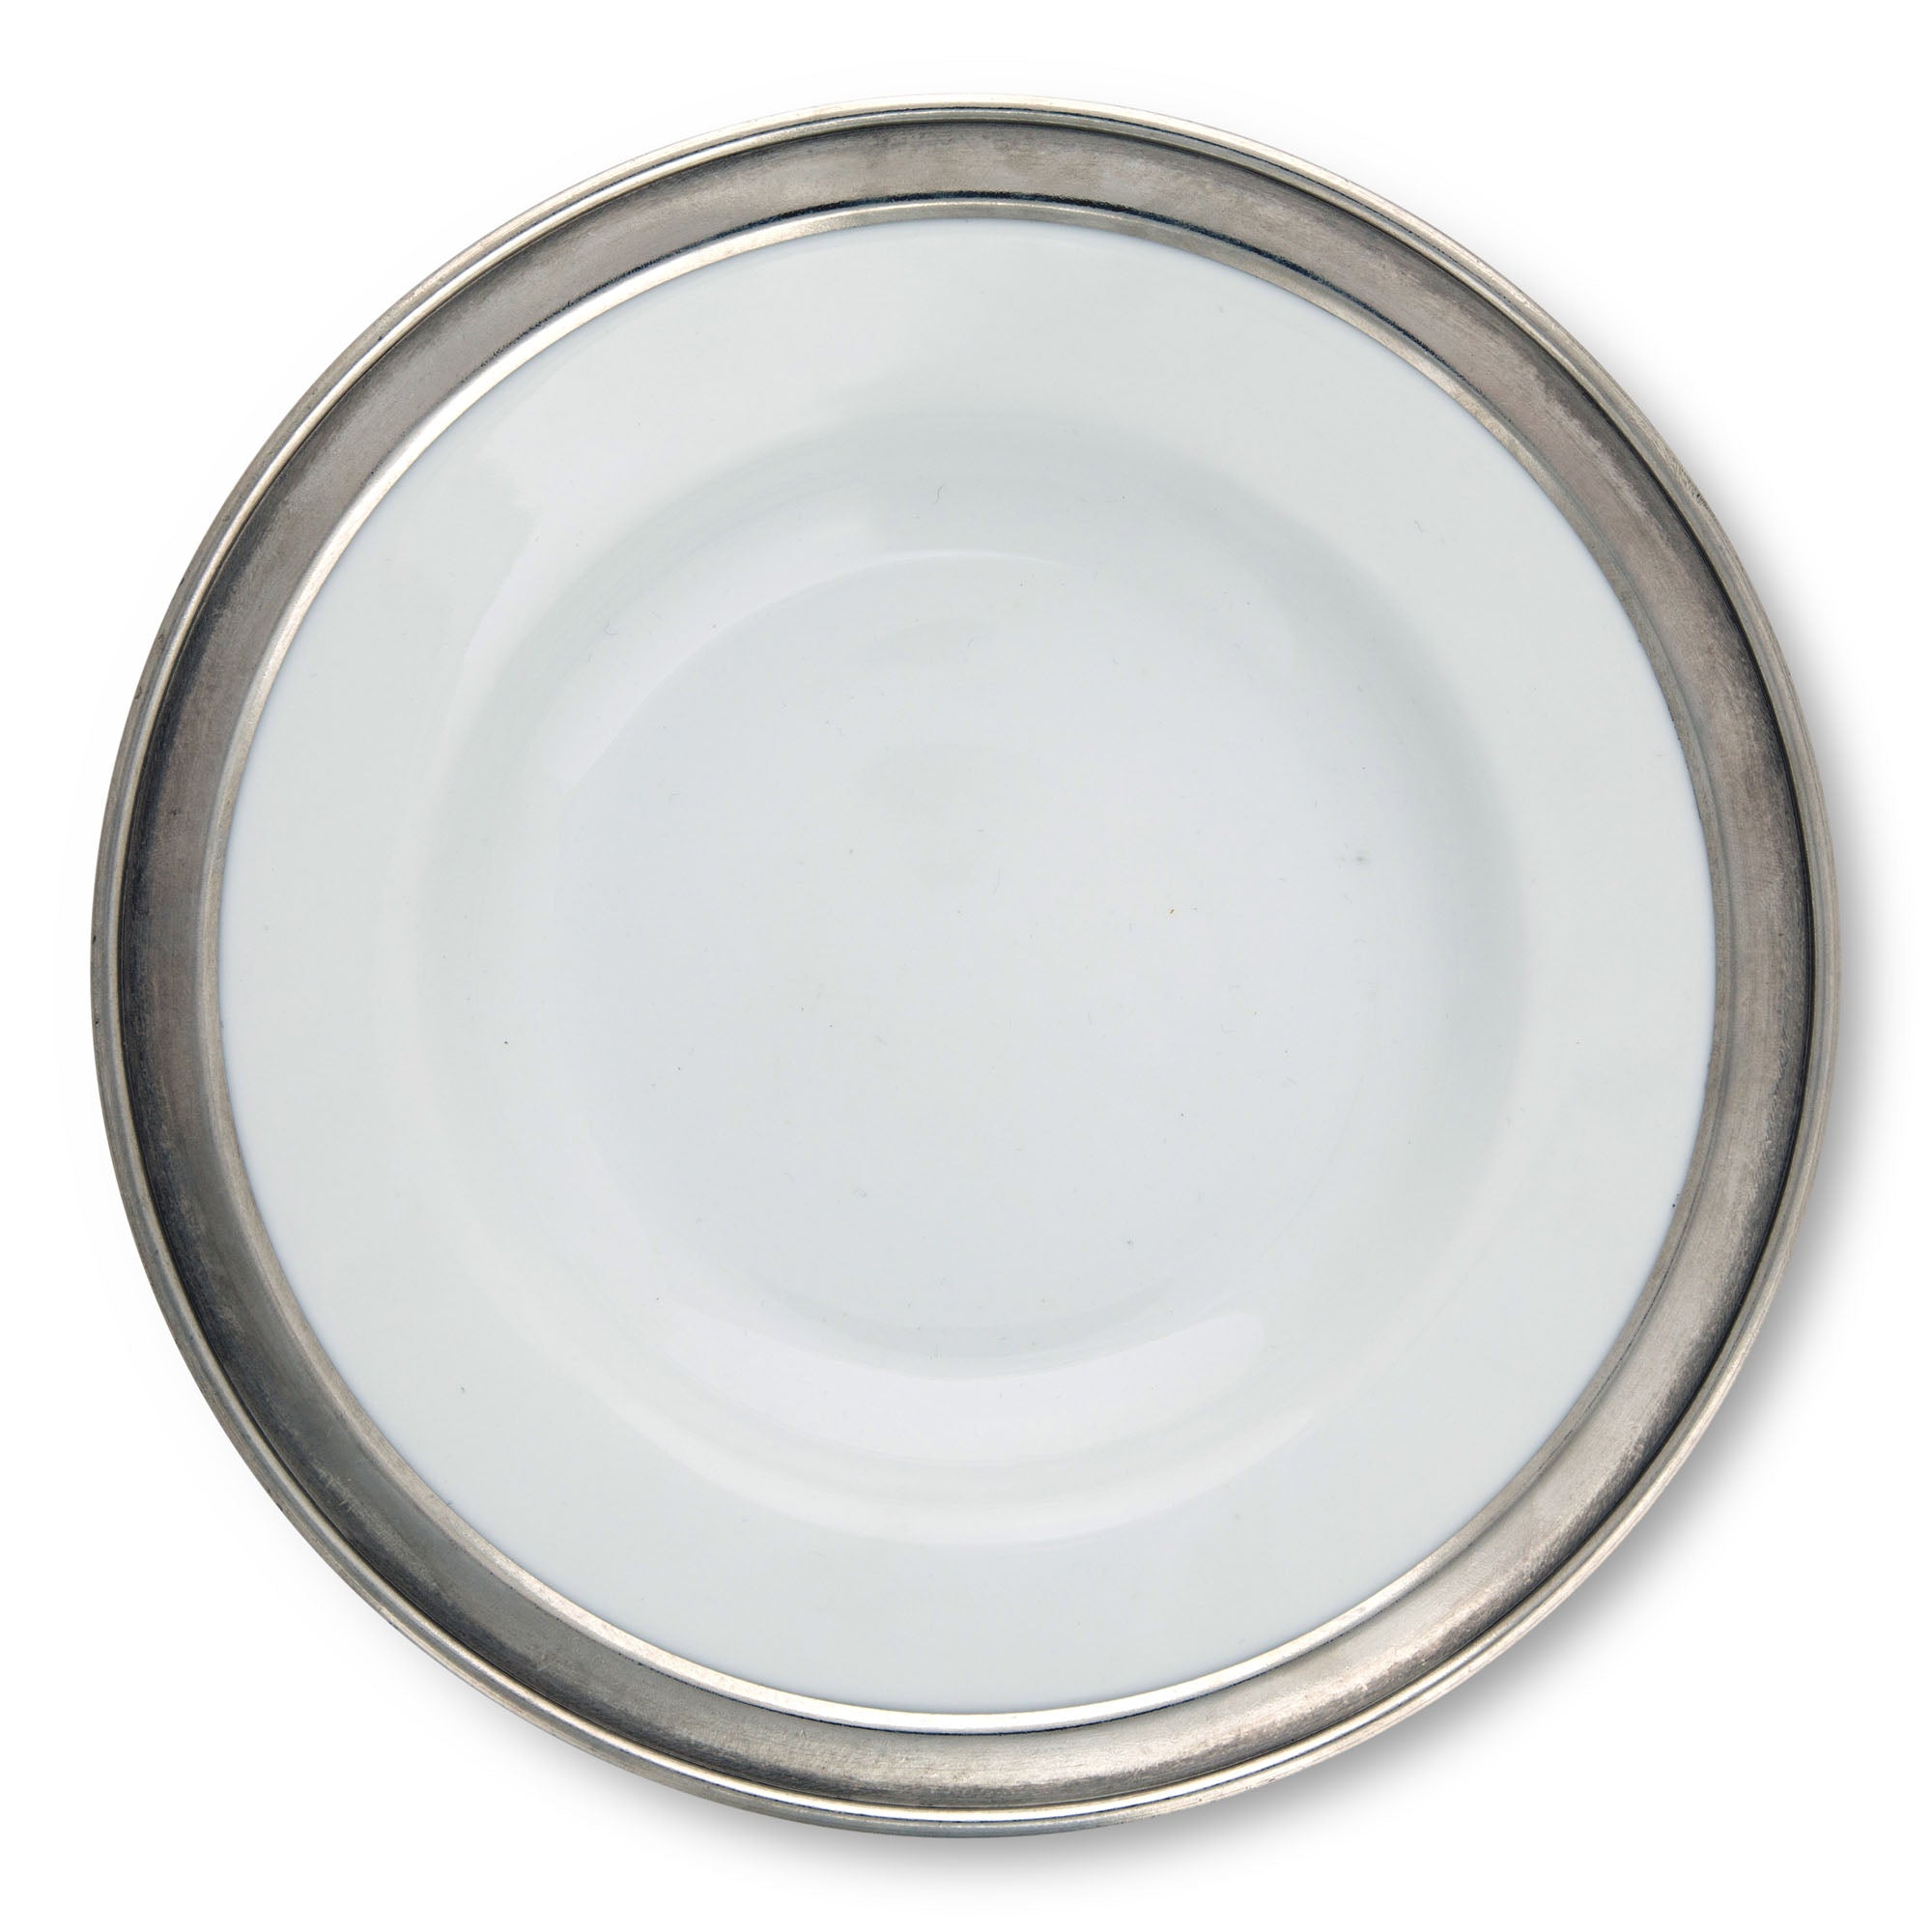 Vagabond House Classic Pewter Rim Soup Bowl Product Image